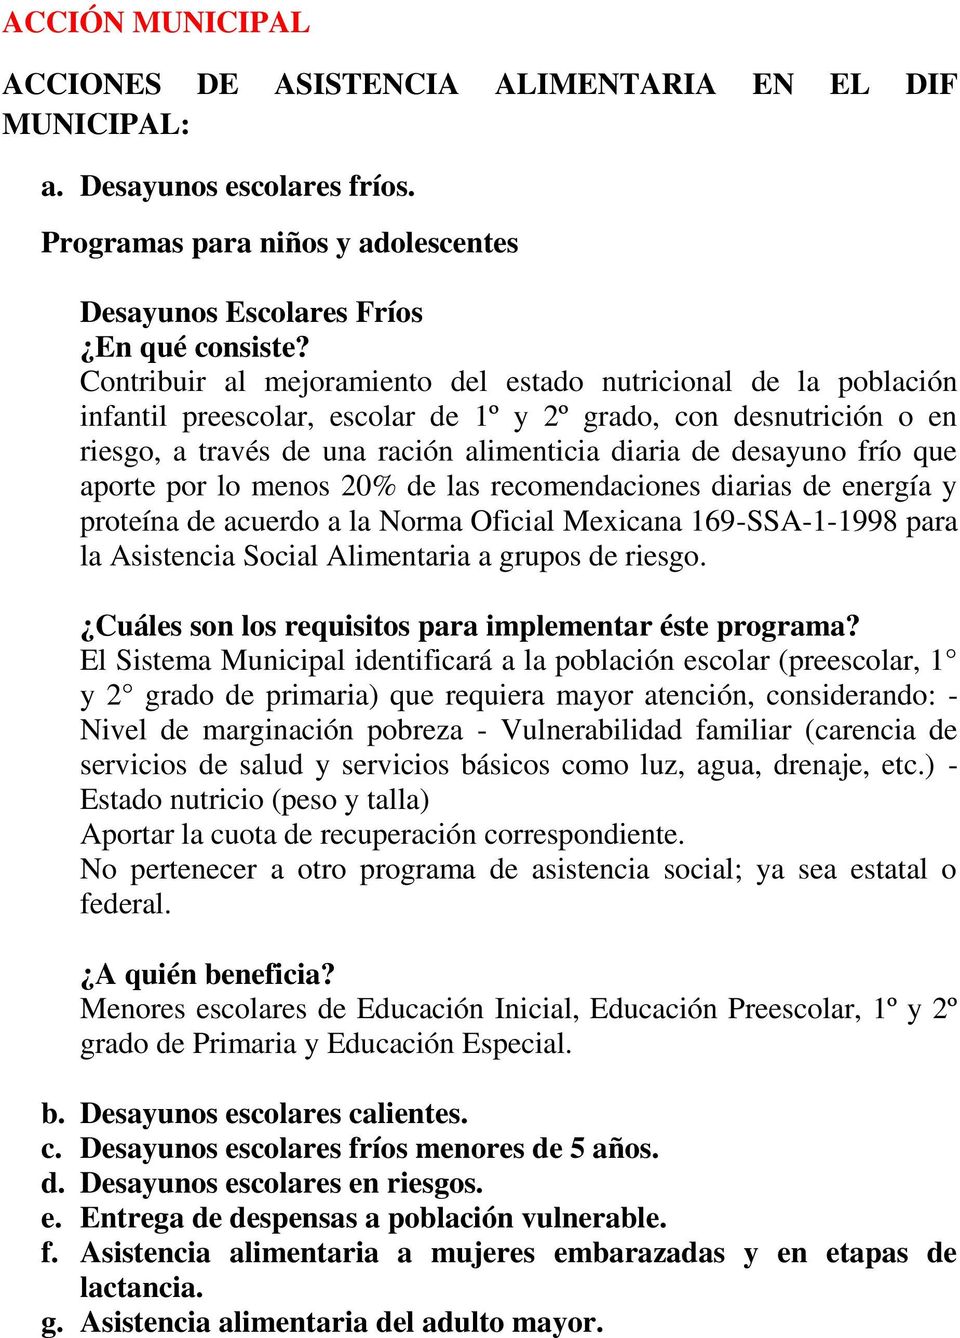 frío que aporte por lo menos 20% de las recomendaciones diarias de energía y proteína de acuerdo a la Norma Oficial Mexicana 169-SSA-1-1998 para la Asistencia Social Alimentaria a grupos de riesgo.